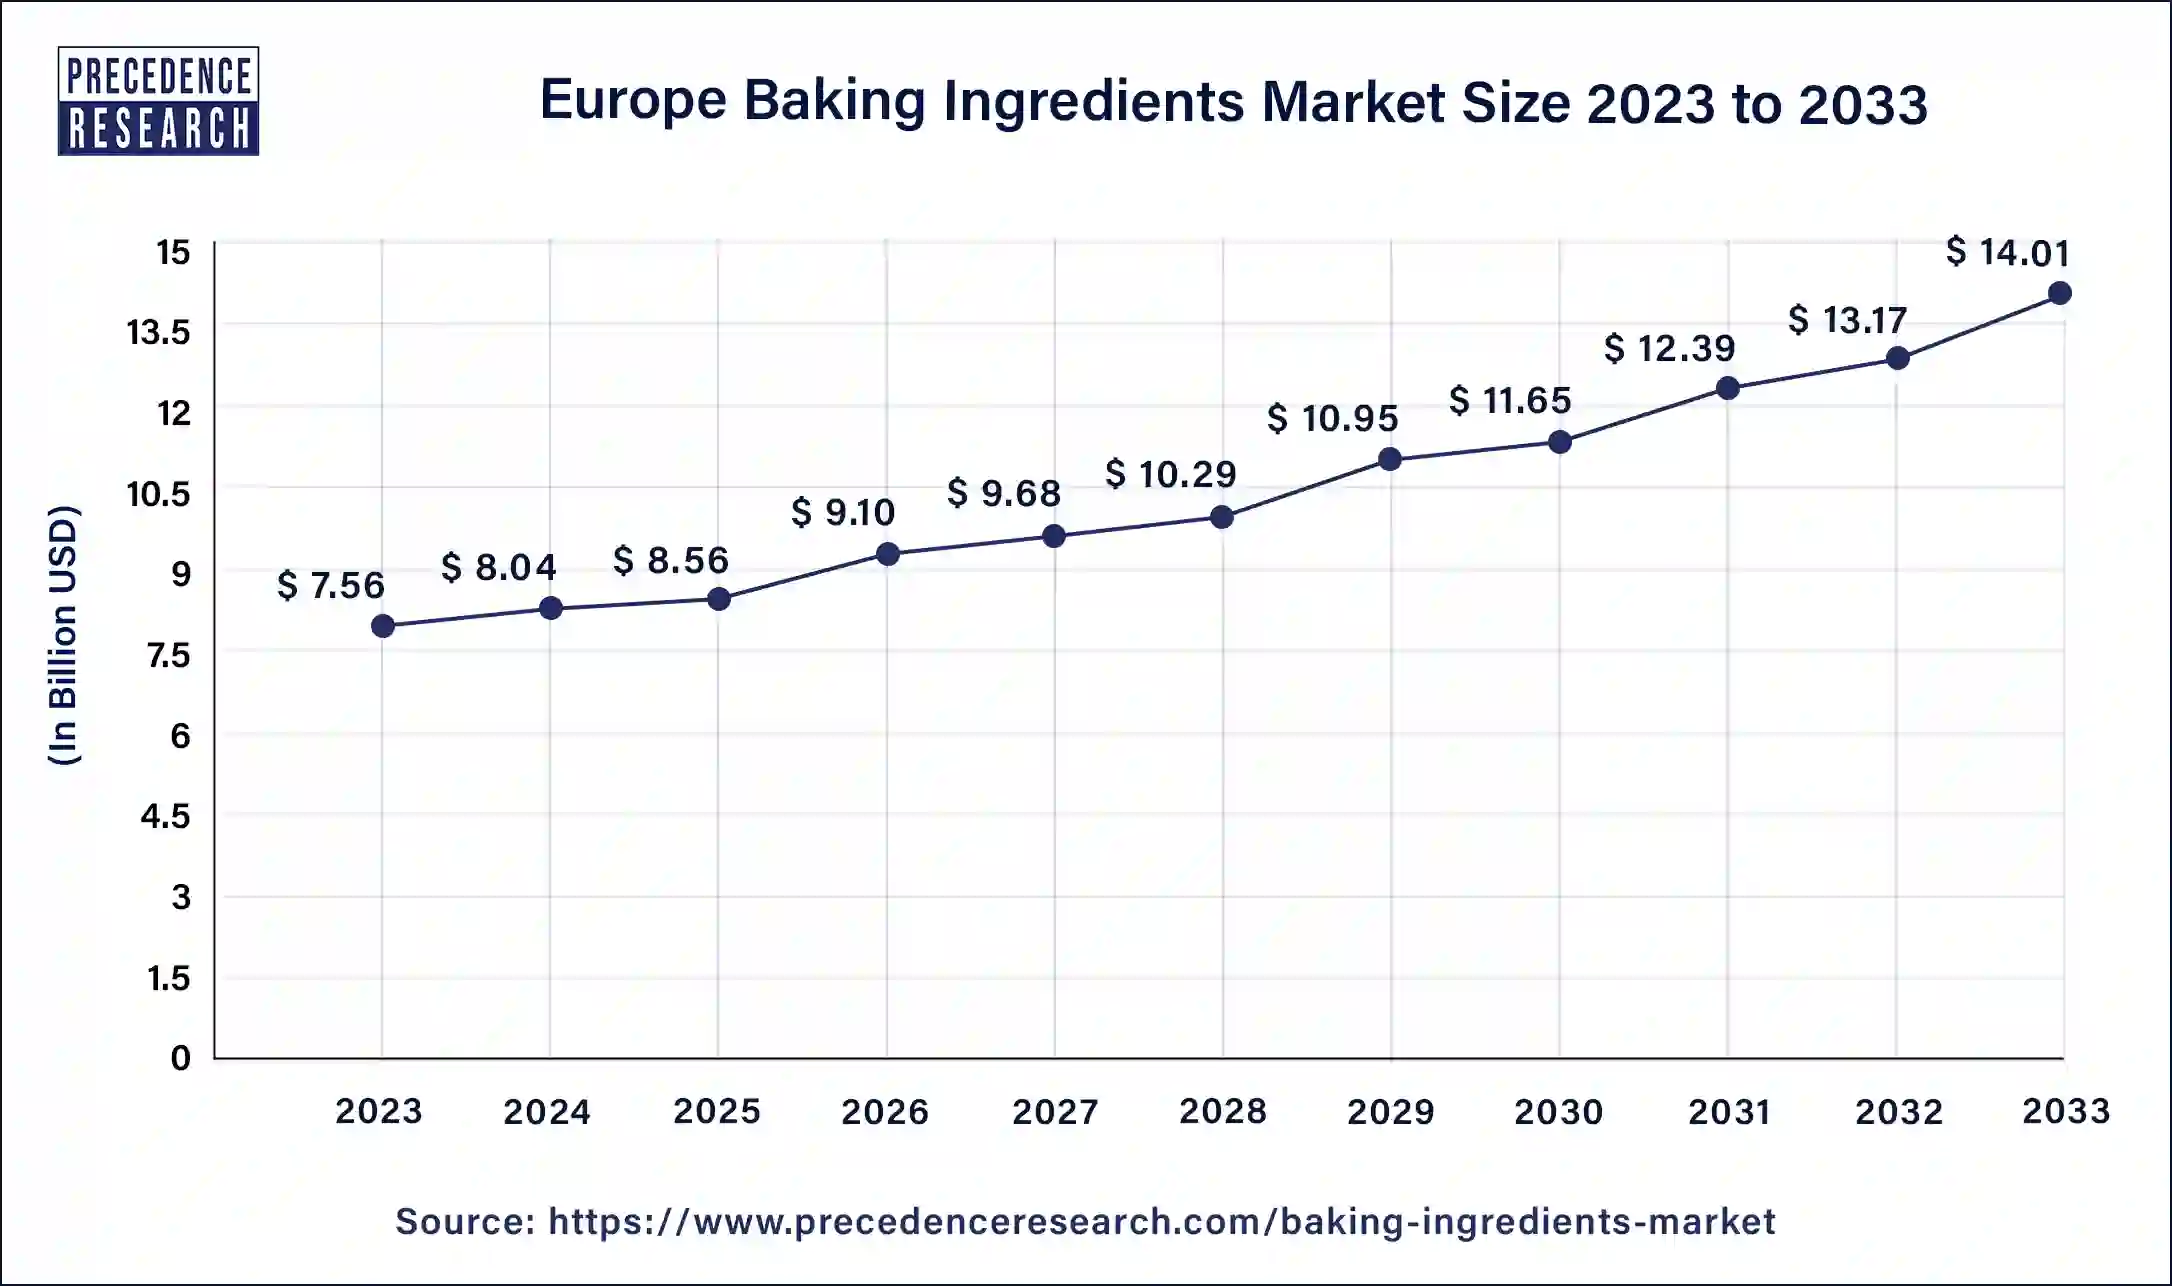 Europe Baking Ingredients Market Size 2024 to 2033